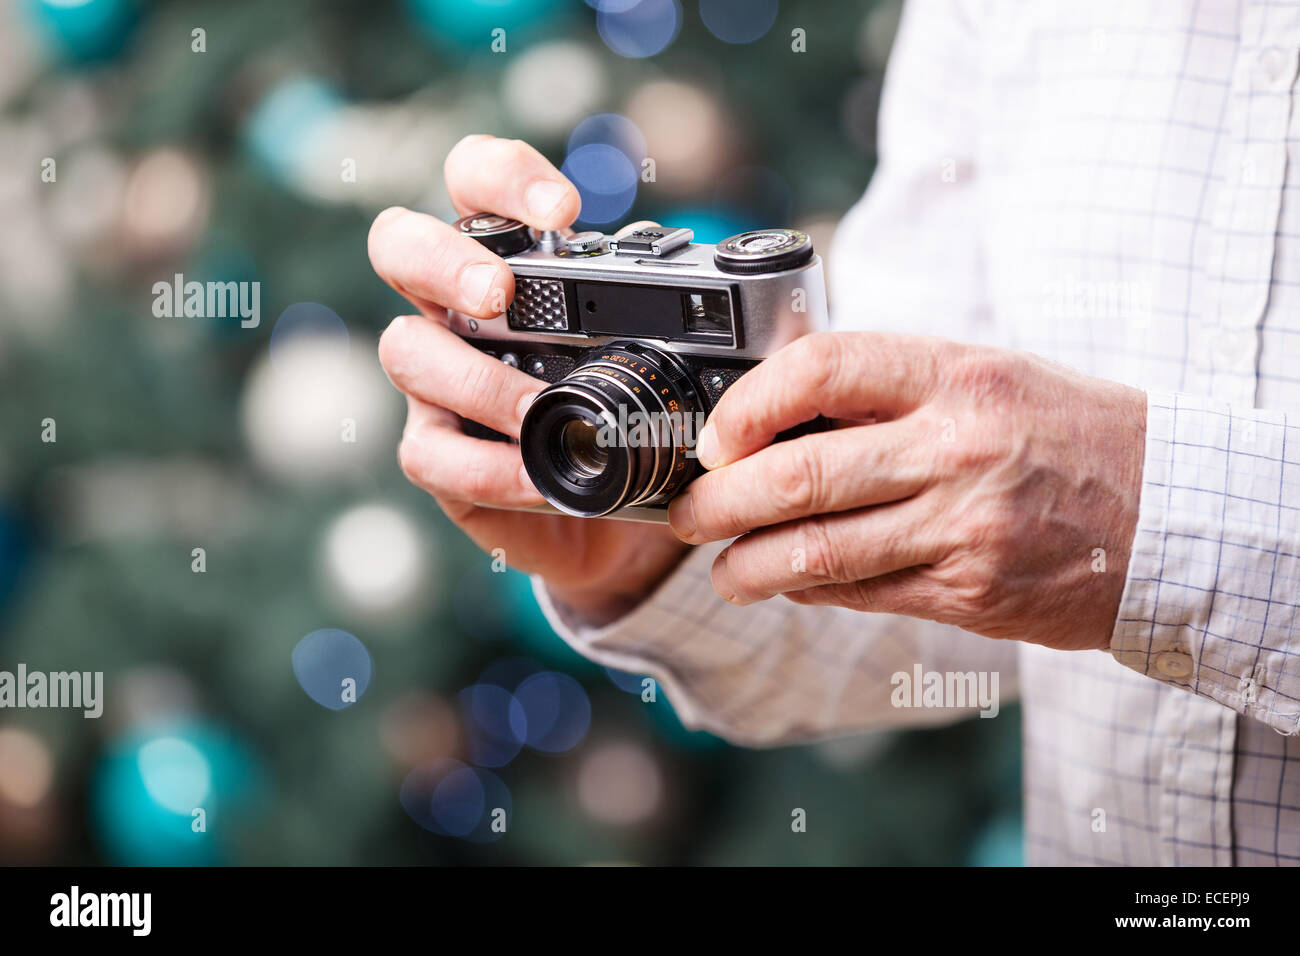 Portrait de l'homme contre l'appareil photo rétro holding Christmas background Banque D'Images